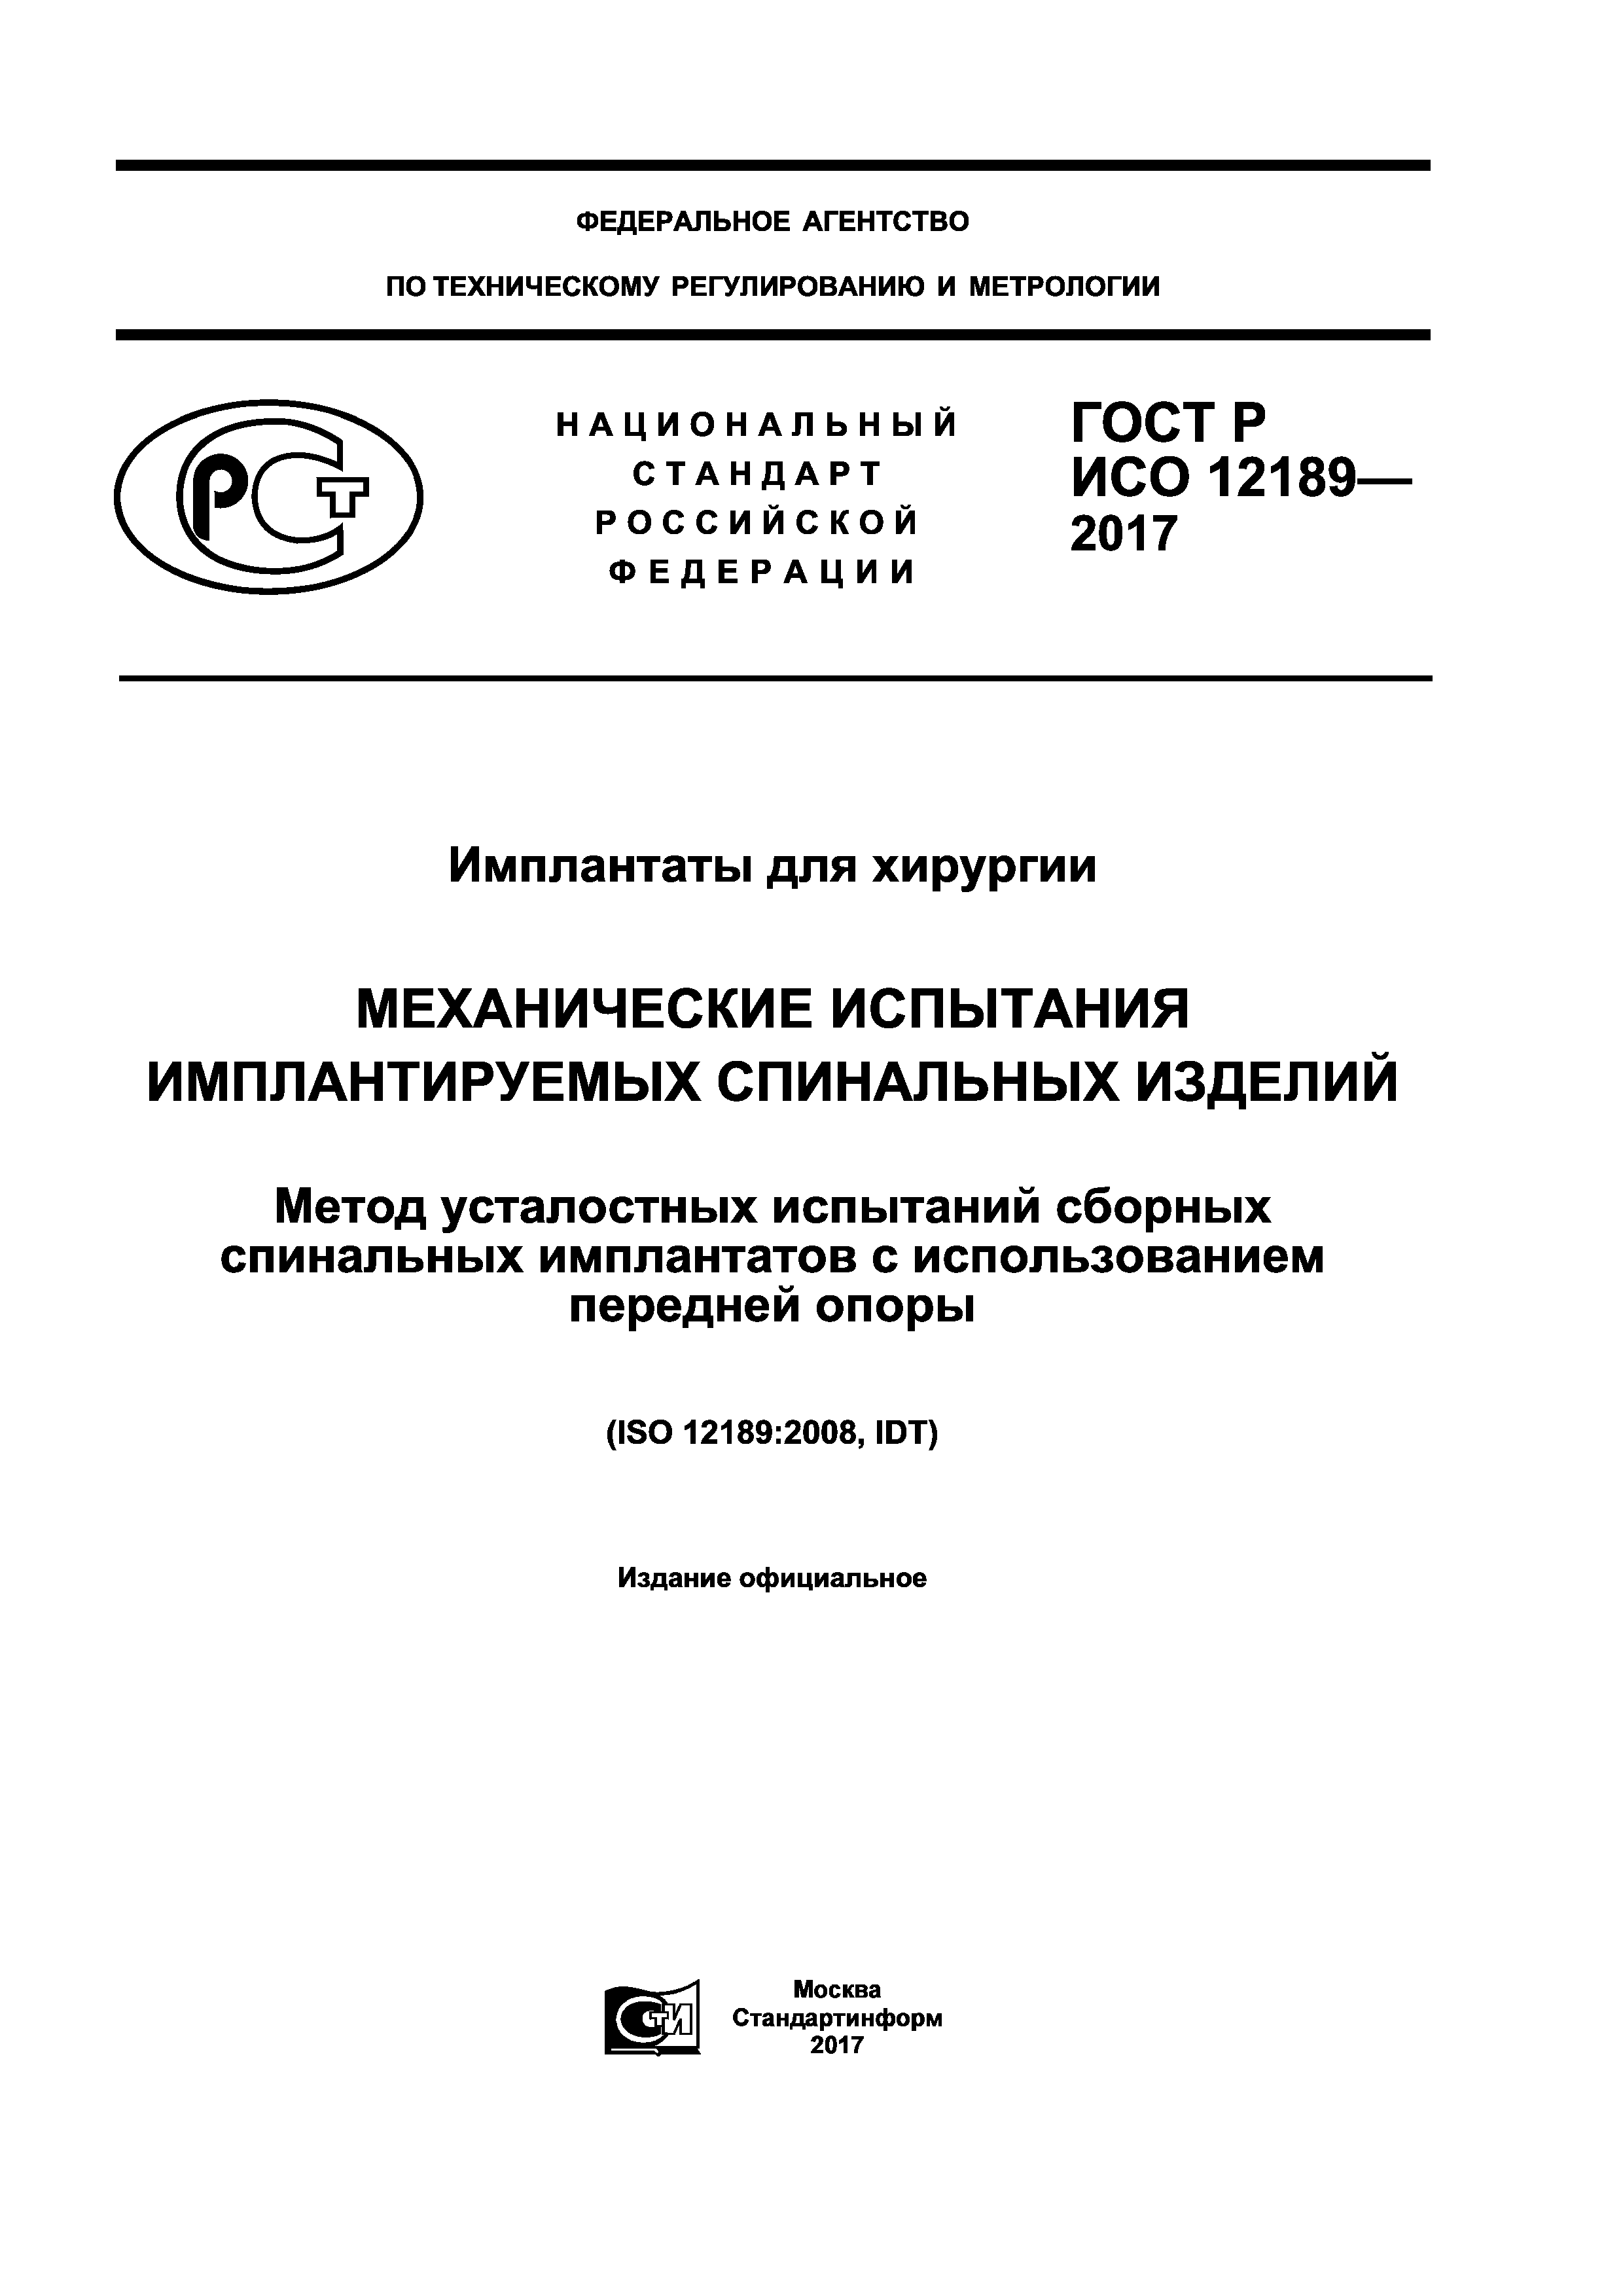 ГОСТ Р ИСО 12189-2017